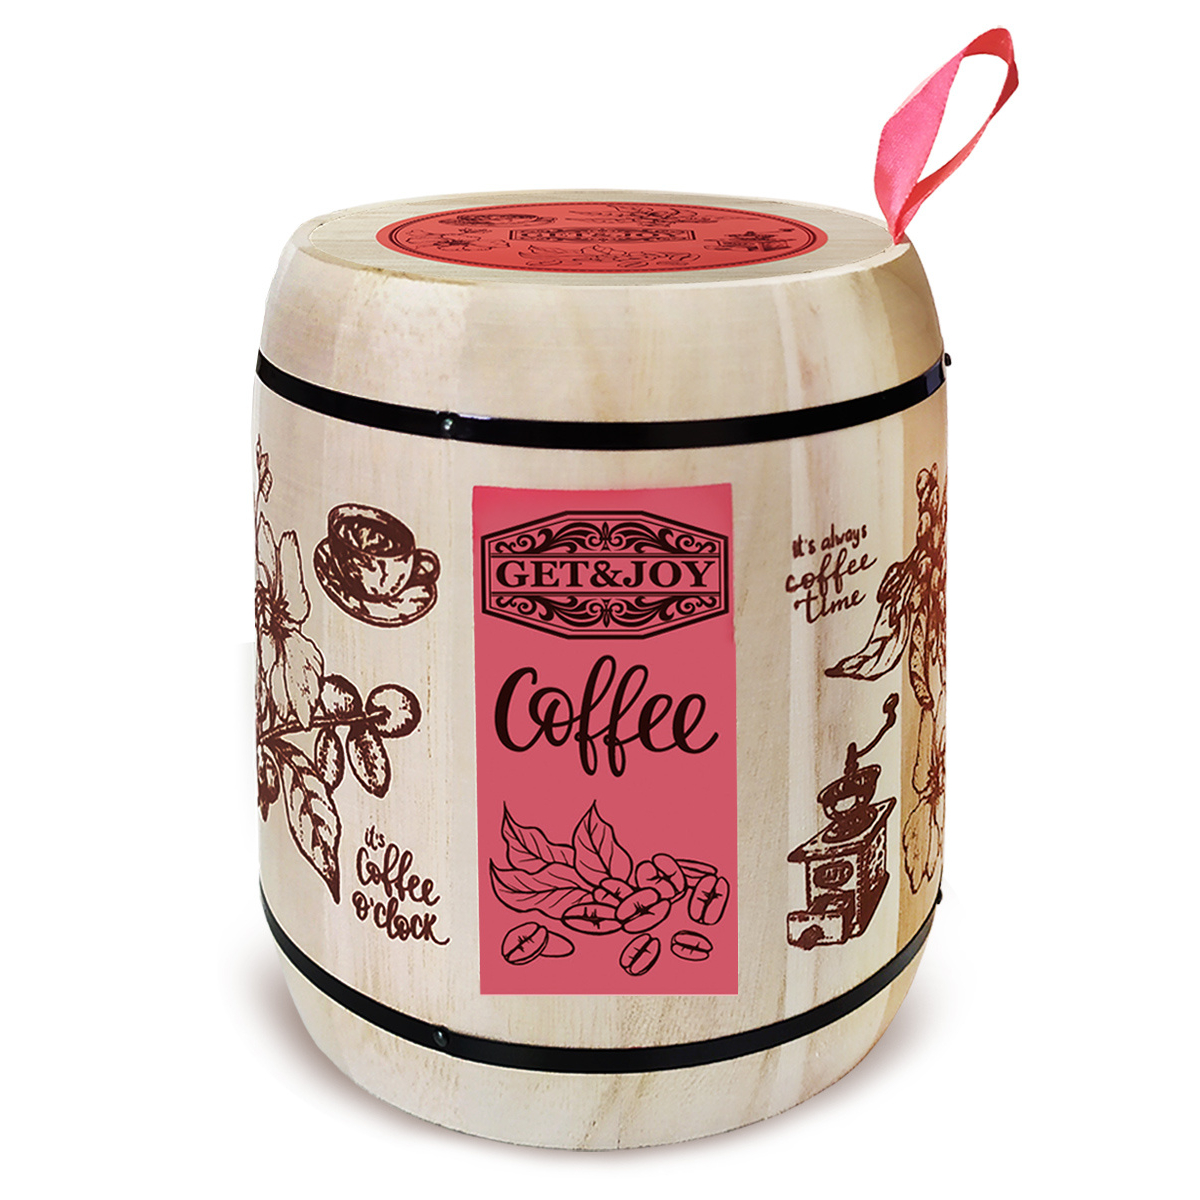 Кофе молотый Get&Joy Ирландский крем, розовый бочонок, 150 г кофе mr viet молотый cafe dalat 500г